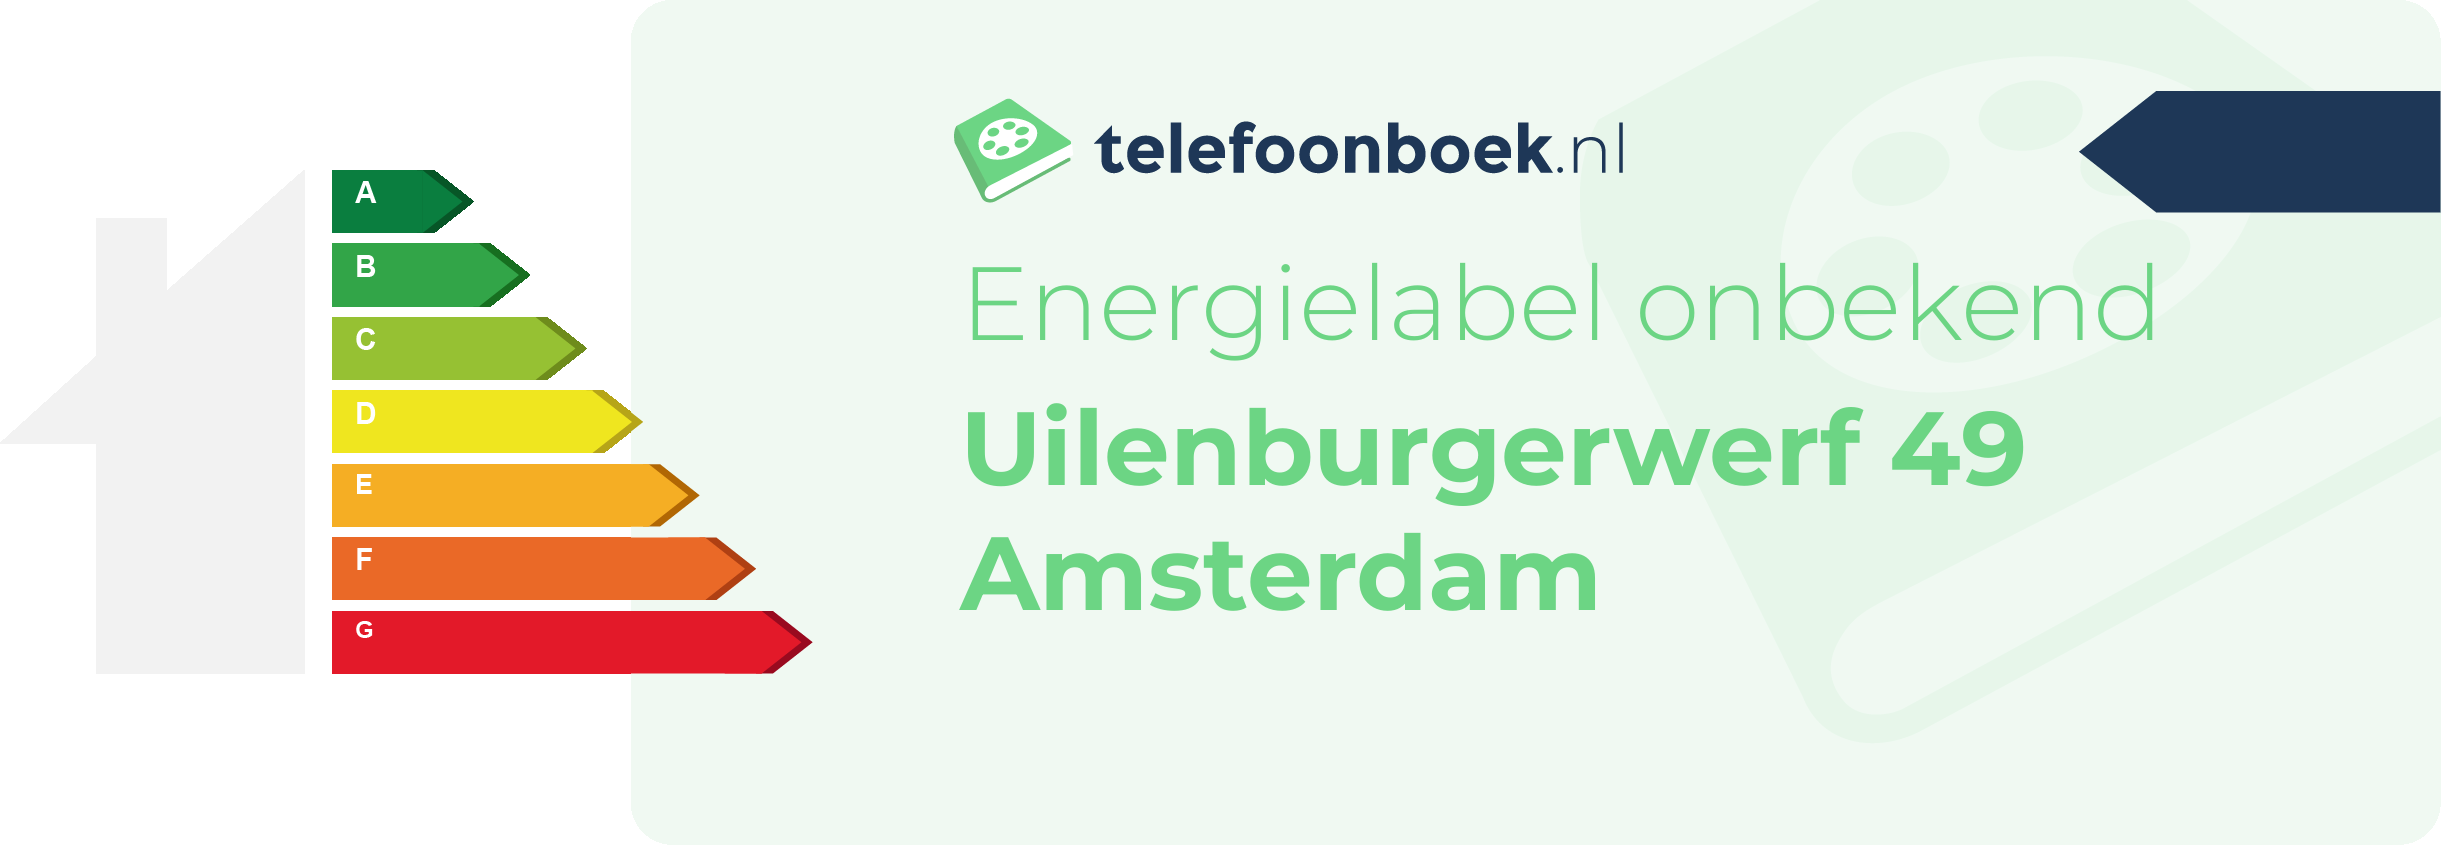 Energielabel Uilenburgerwerf 49 Amsterdam